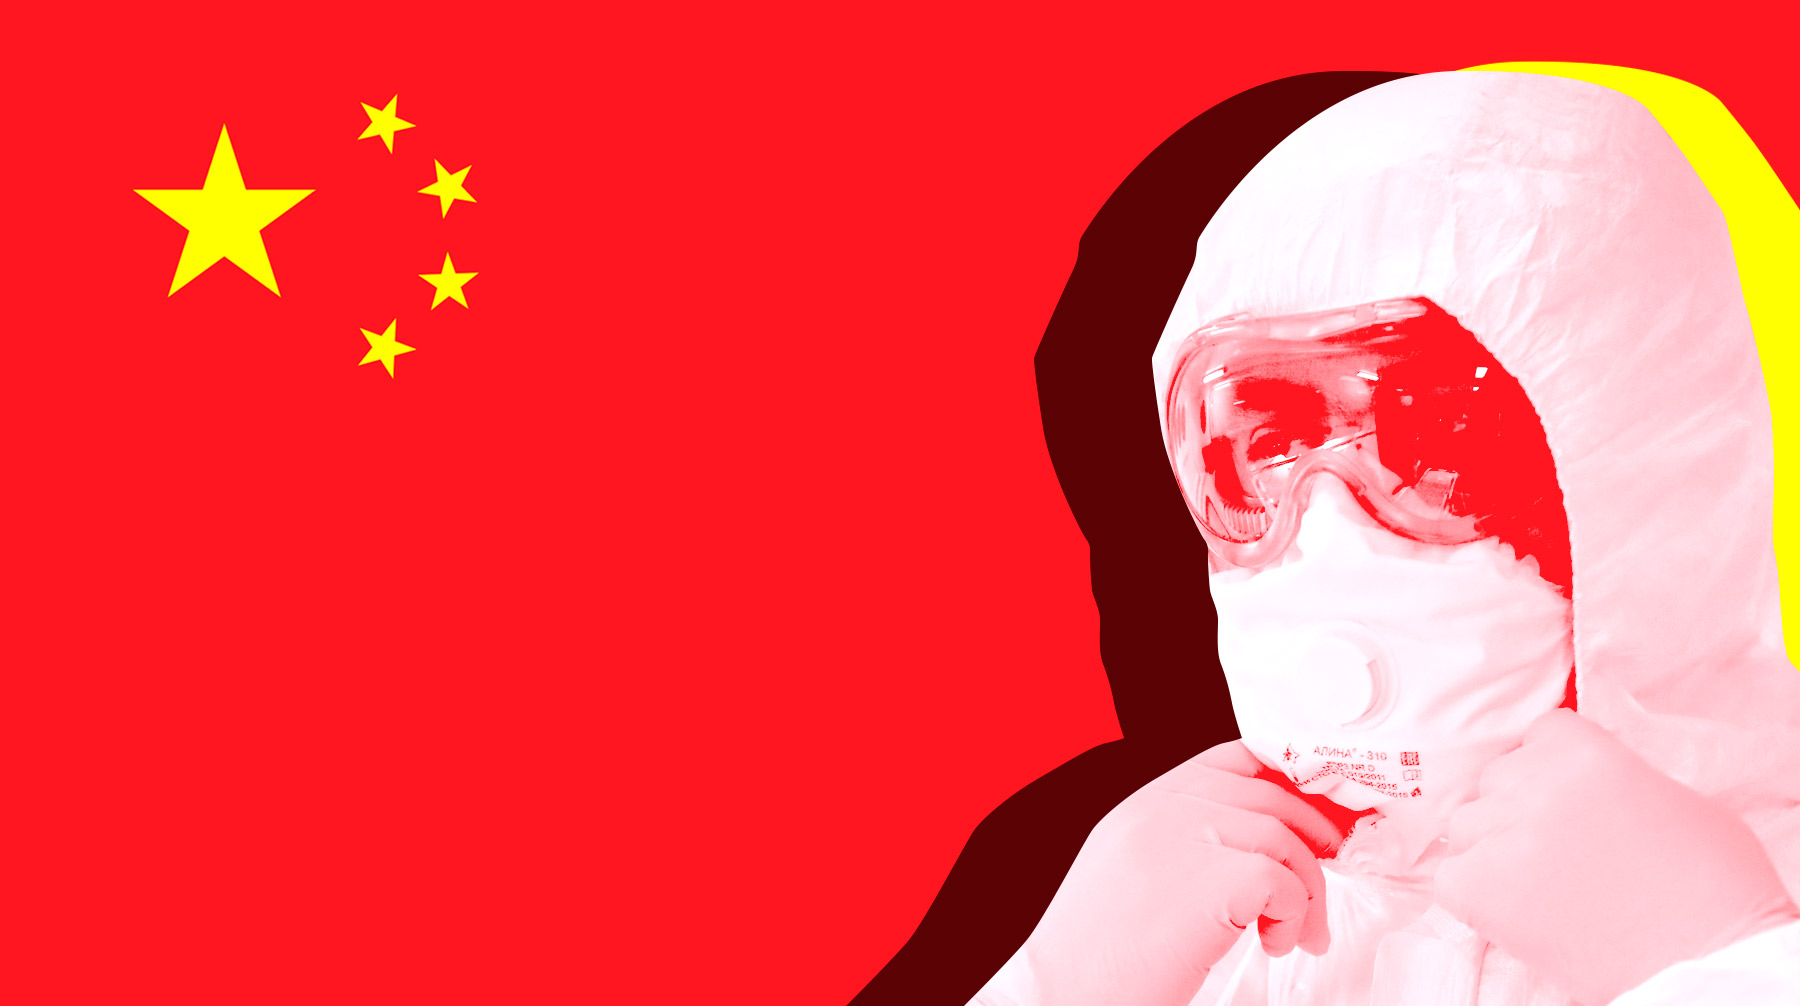 КНР успешнее всех других стран справилась с эпидемией, заявили в ведомстве Коллаж: © Daily Storm